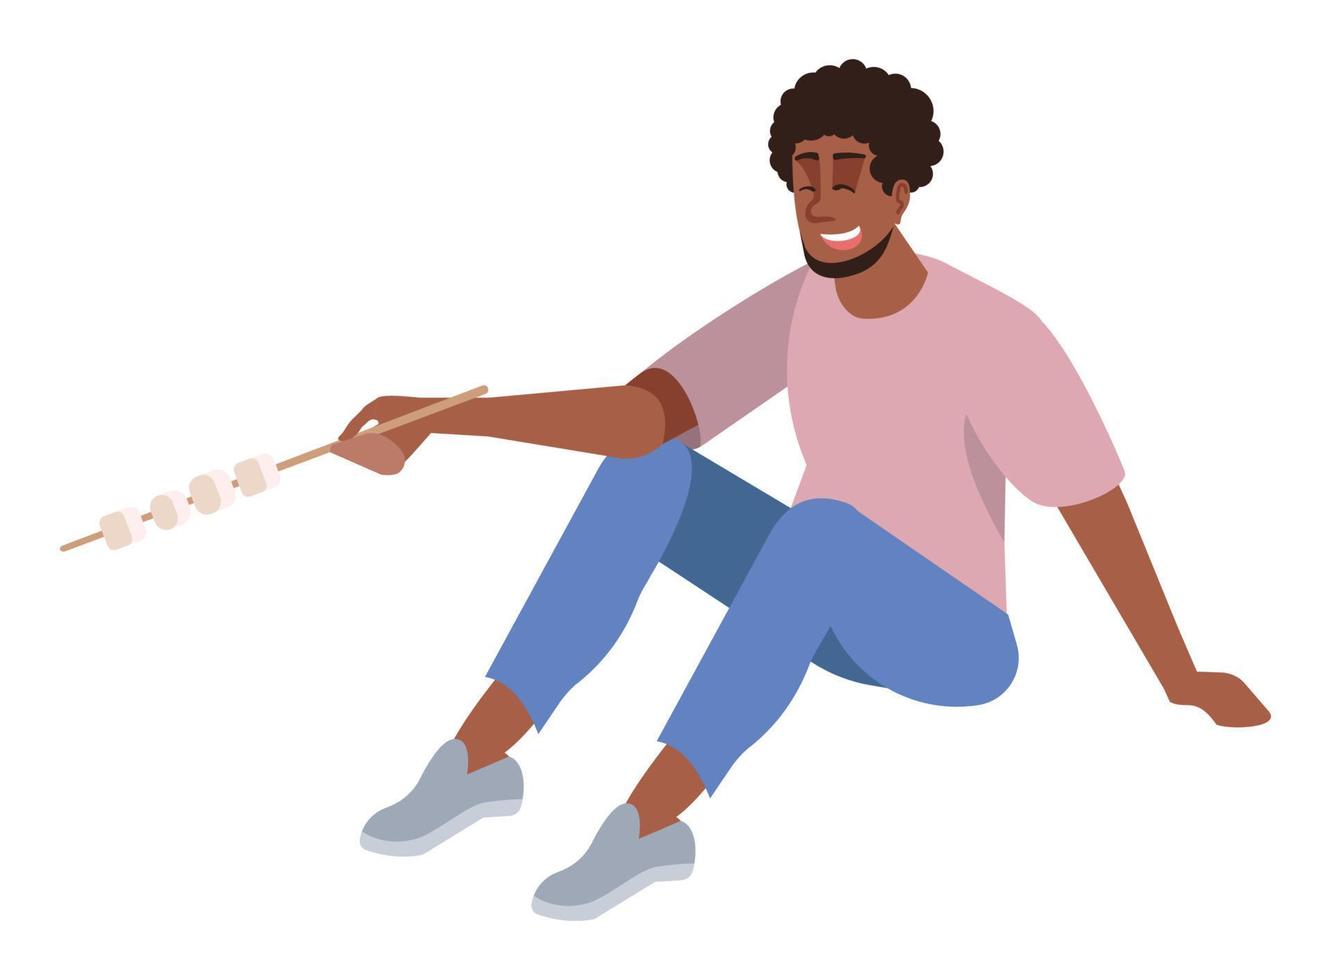 assar marshmallow na vara semi plana rgb cor ilustração vetorial. homem feliz isolado personagem de desenho animado no fundo branco vetor